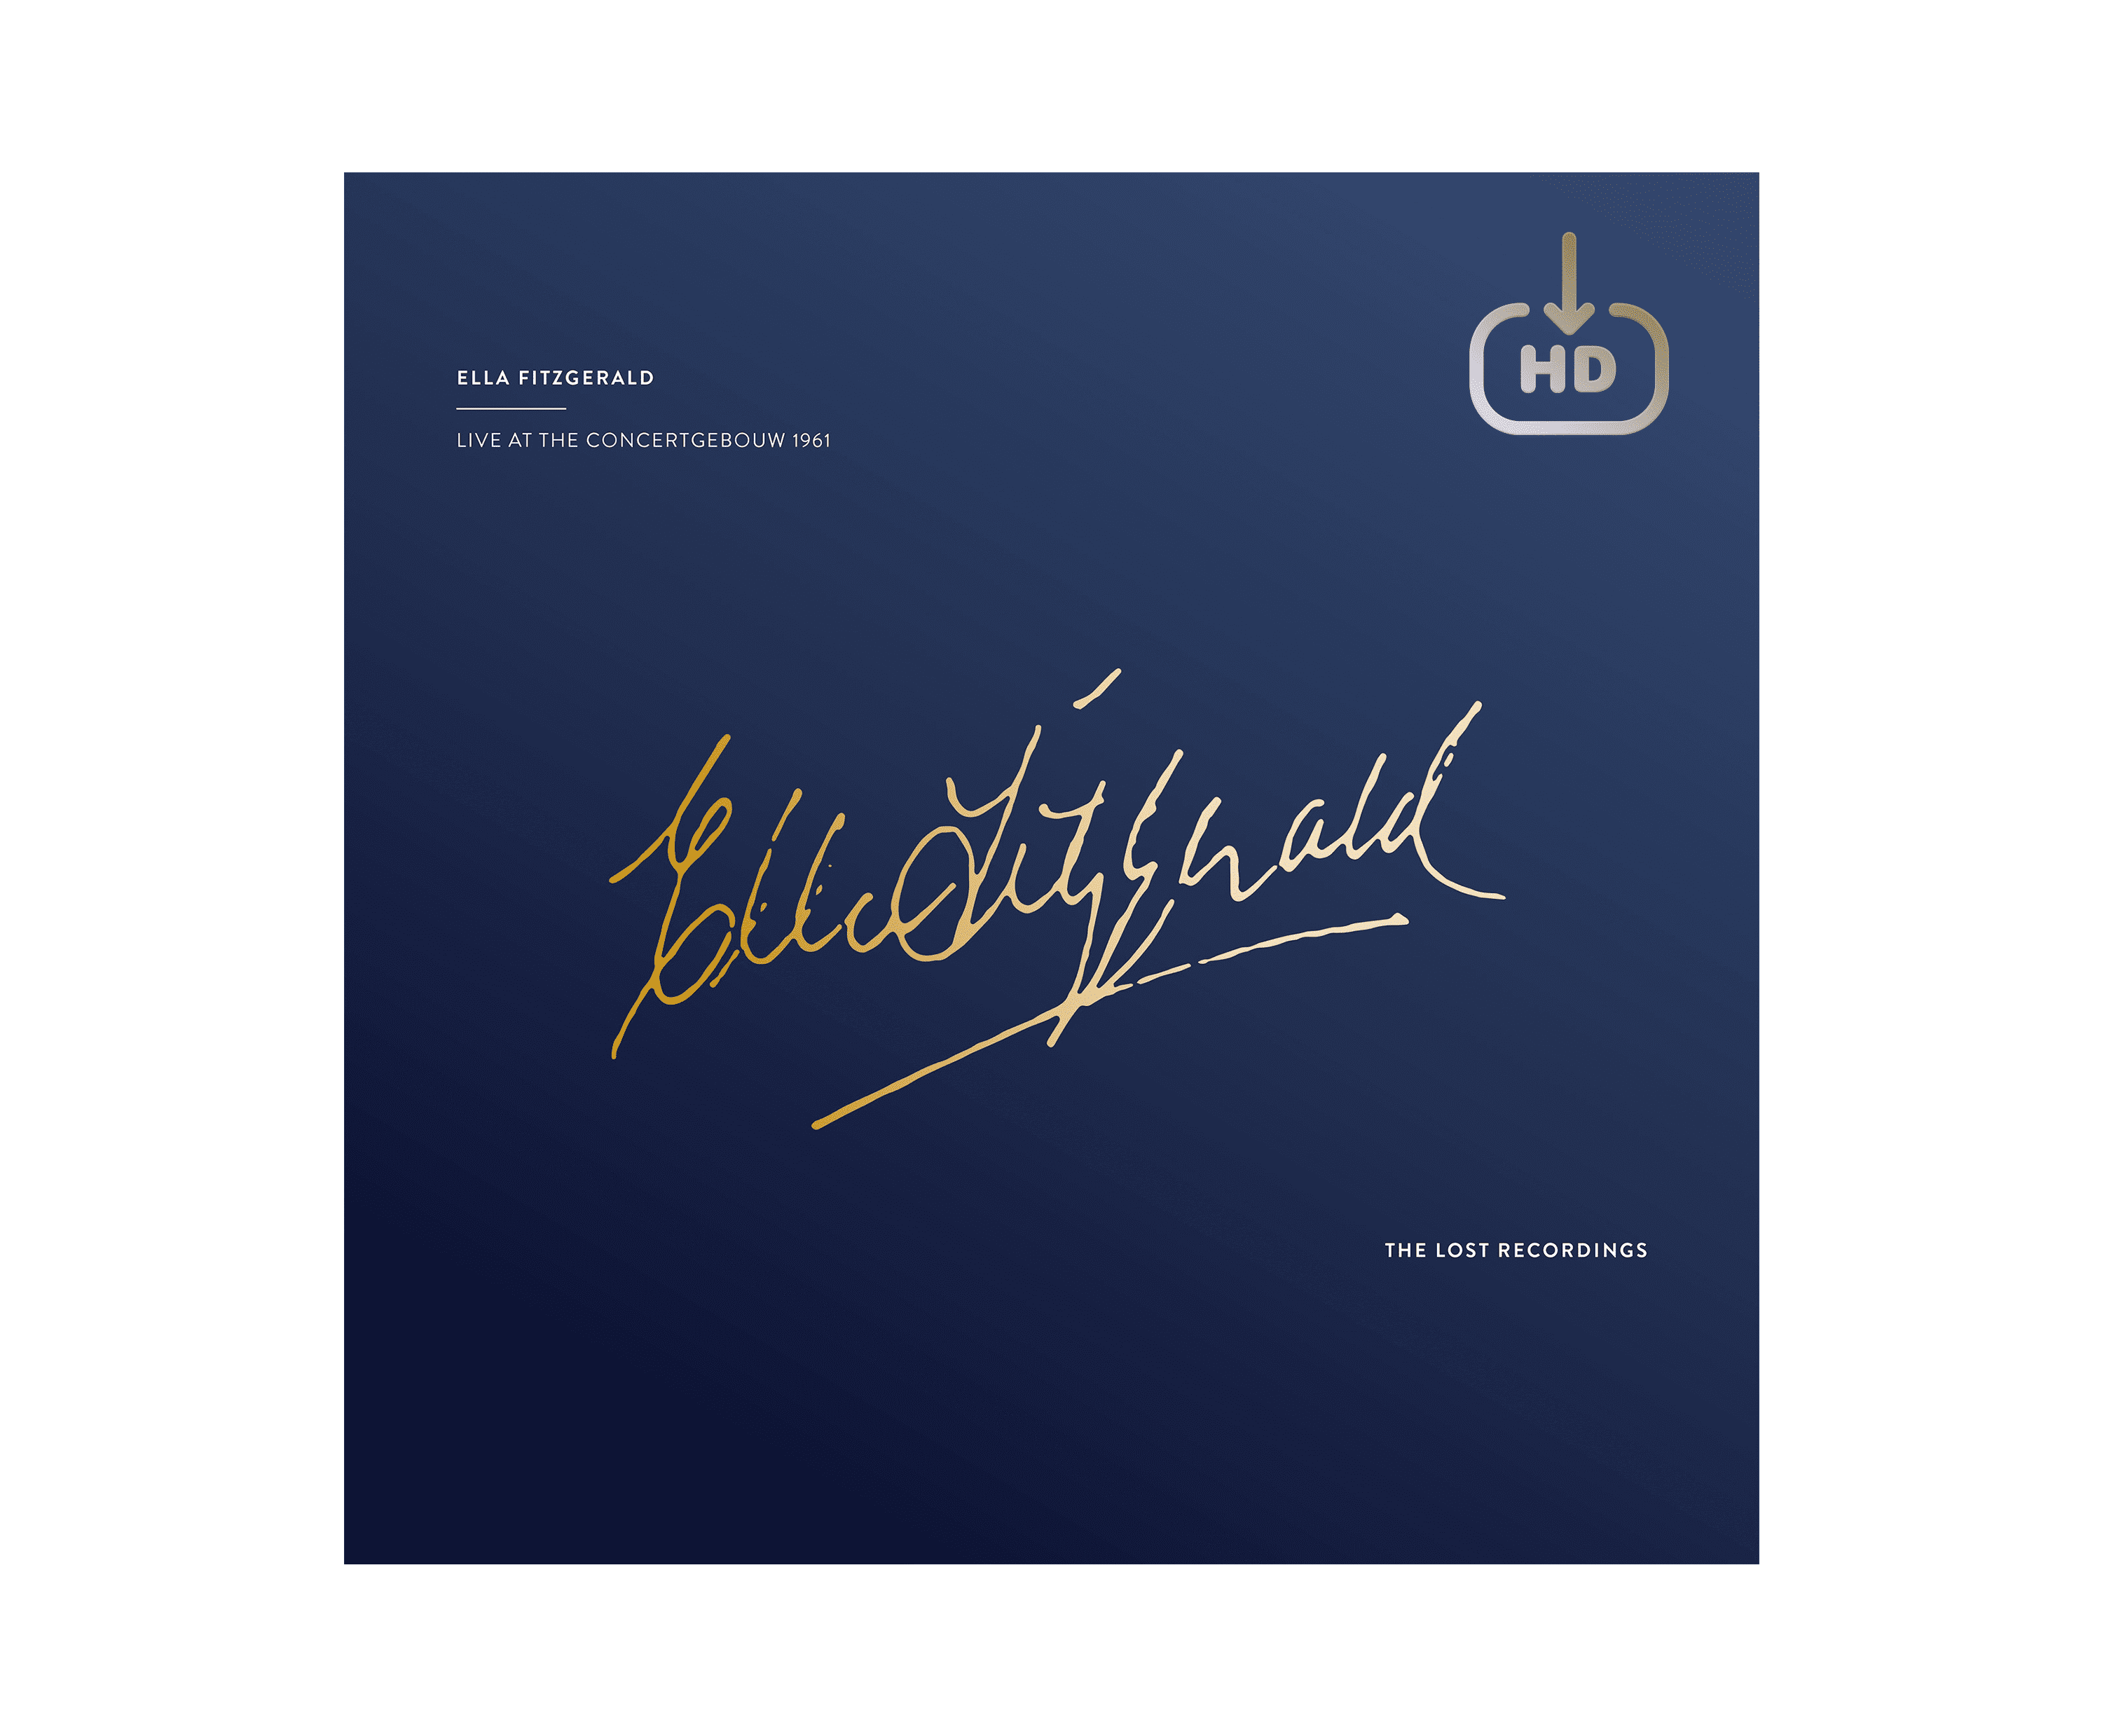 Ella Fitzgerald - Live at the Concertgebouw - 1961